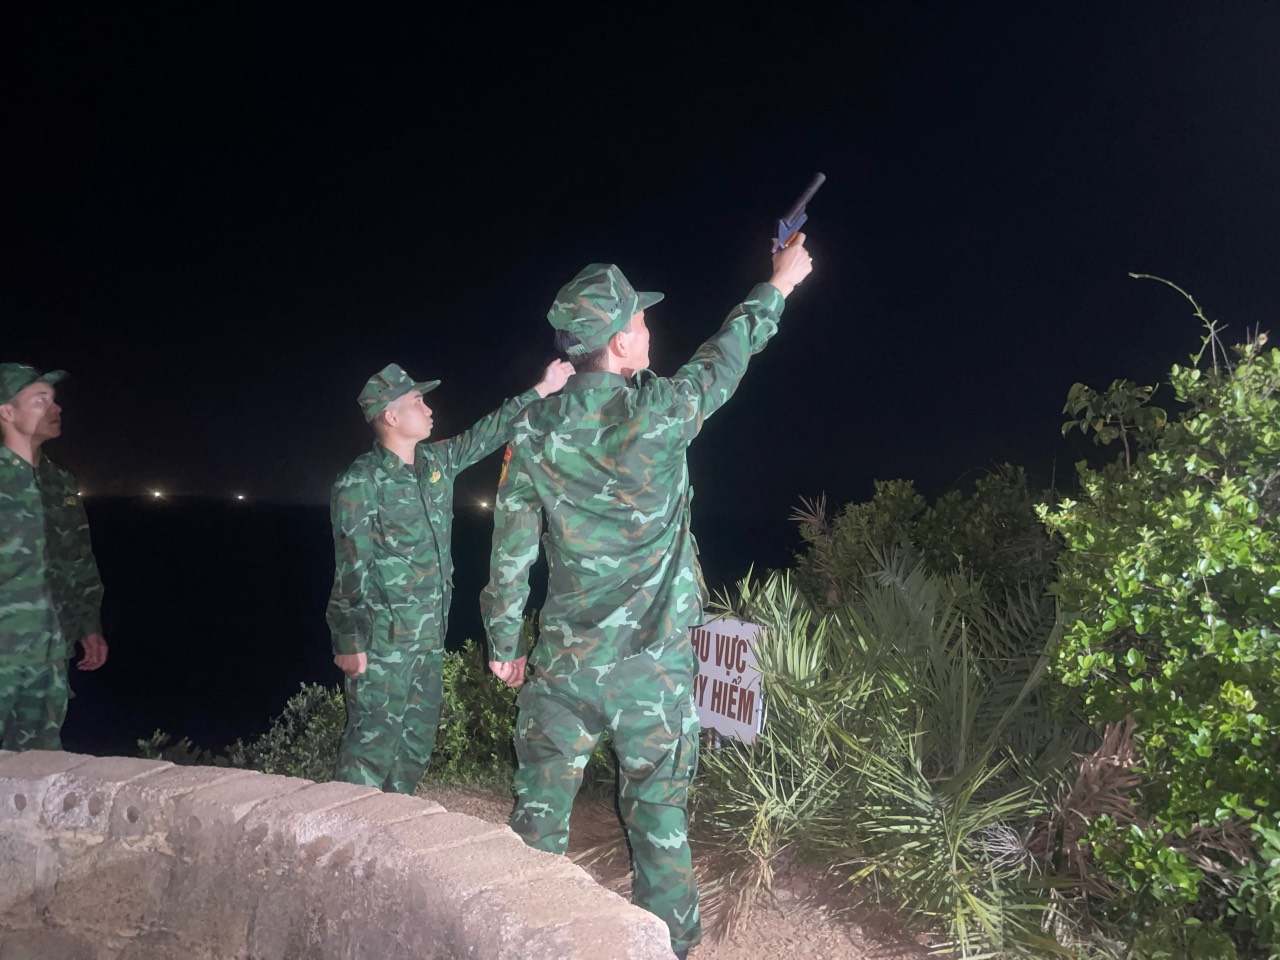 Ứng phó bão số 1 (Talim), Biên phòng tỉnh Quảng Ninh  chỉ đạo bắn 3 lượt pháo hiệu báo bão - Ảnh 2.